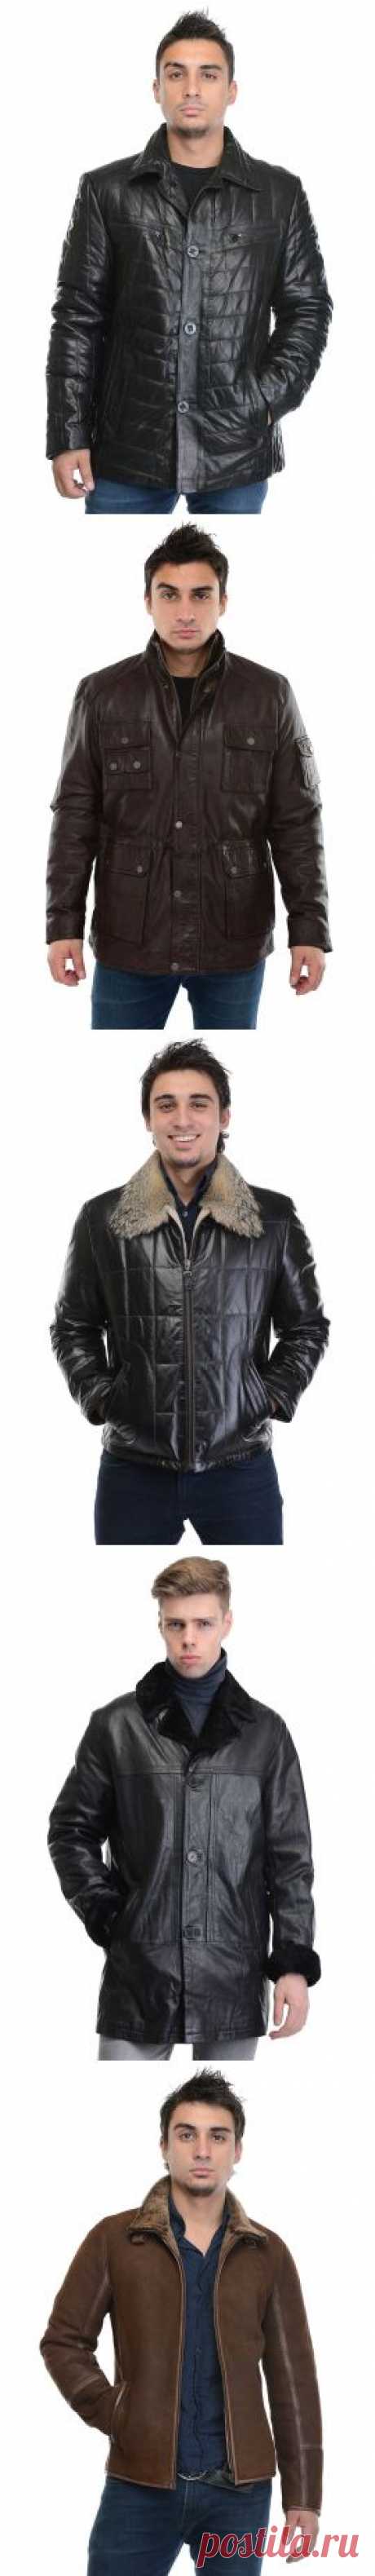 Кожаные куртки для мужчин. Купить мужскую кожаную куртку в интернет магазине Fursk.ru